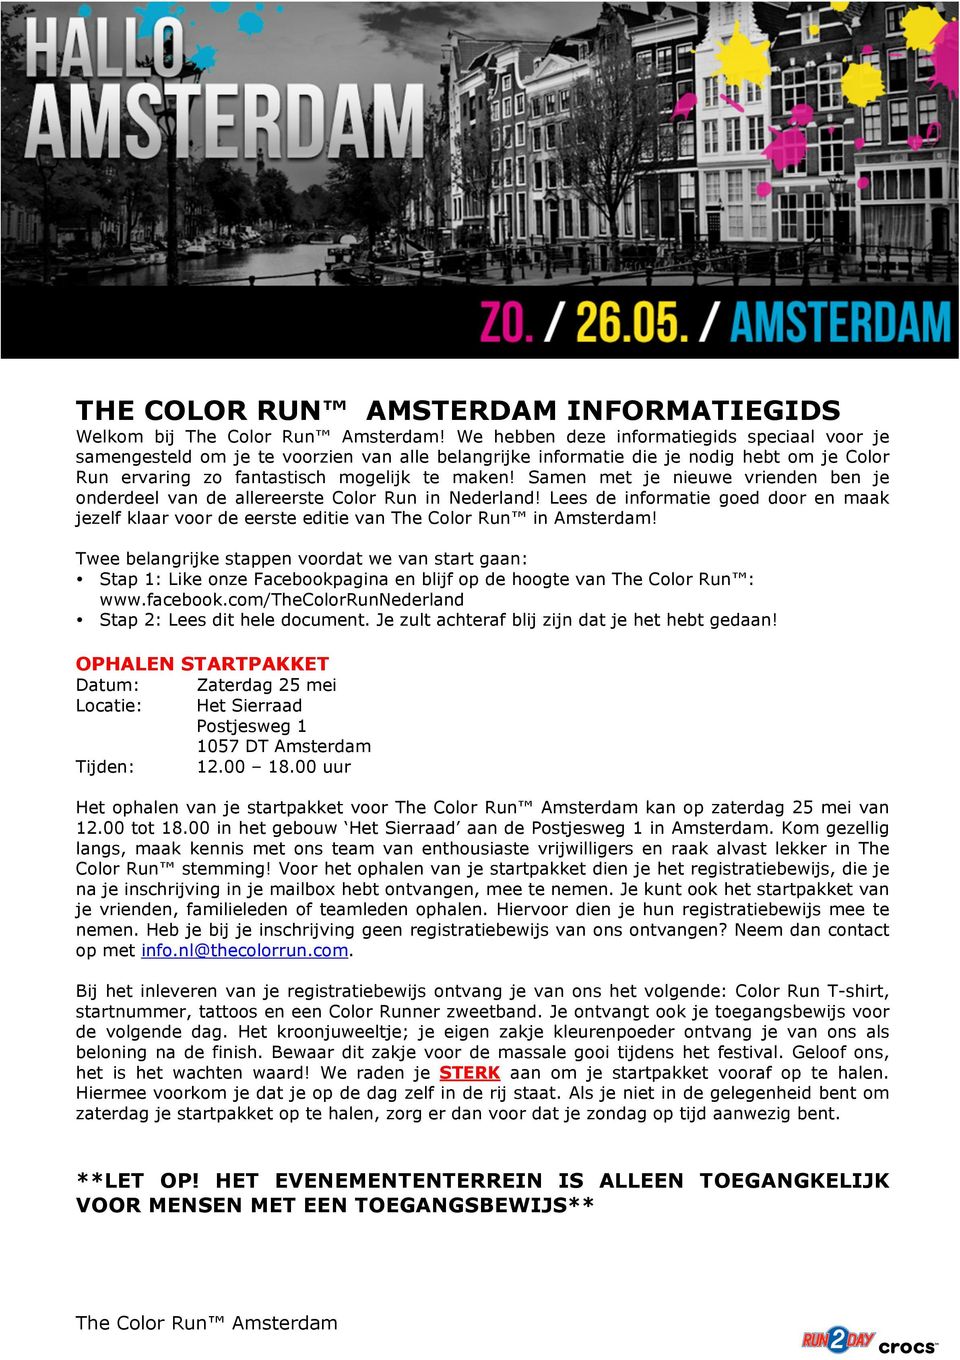 Samen met je nieuwe vrienden ben je onderdeel van de allereerste Color Run in Nederland! Lees de informatie goed door en maak jezelf klaar voor de eerste editie van The Color Run in Amsterdam!